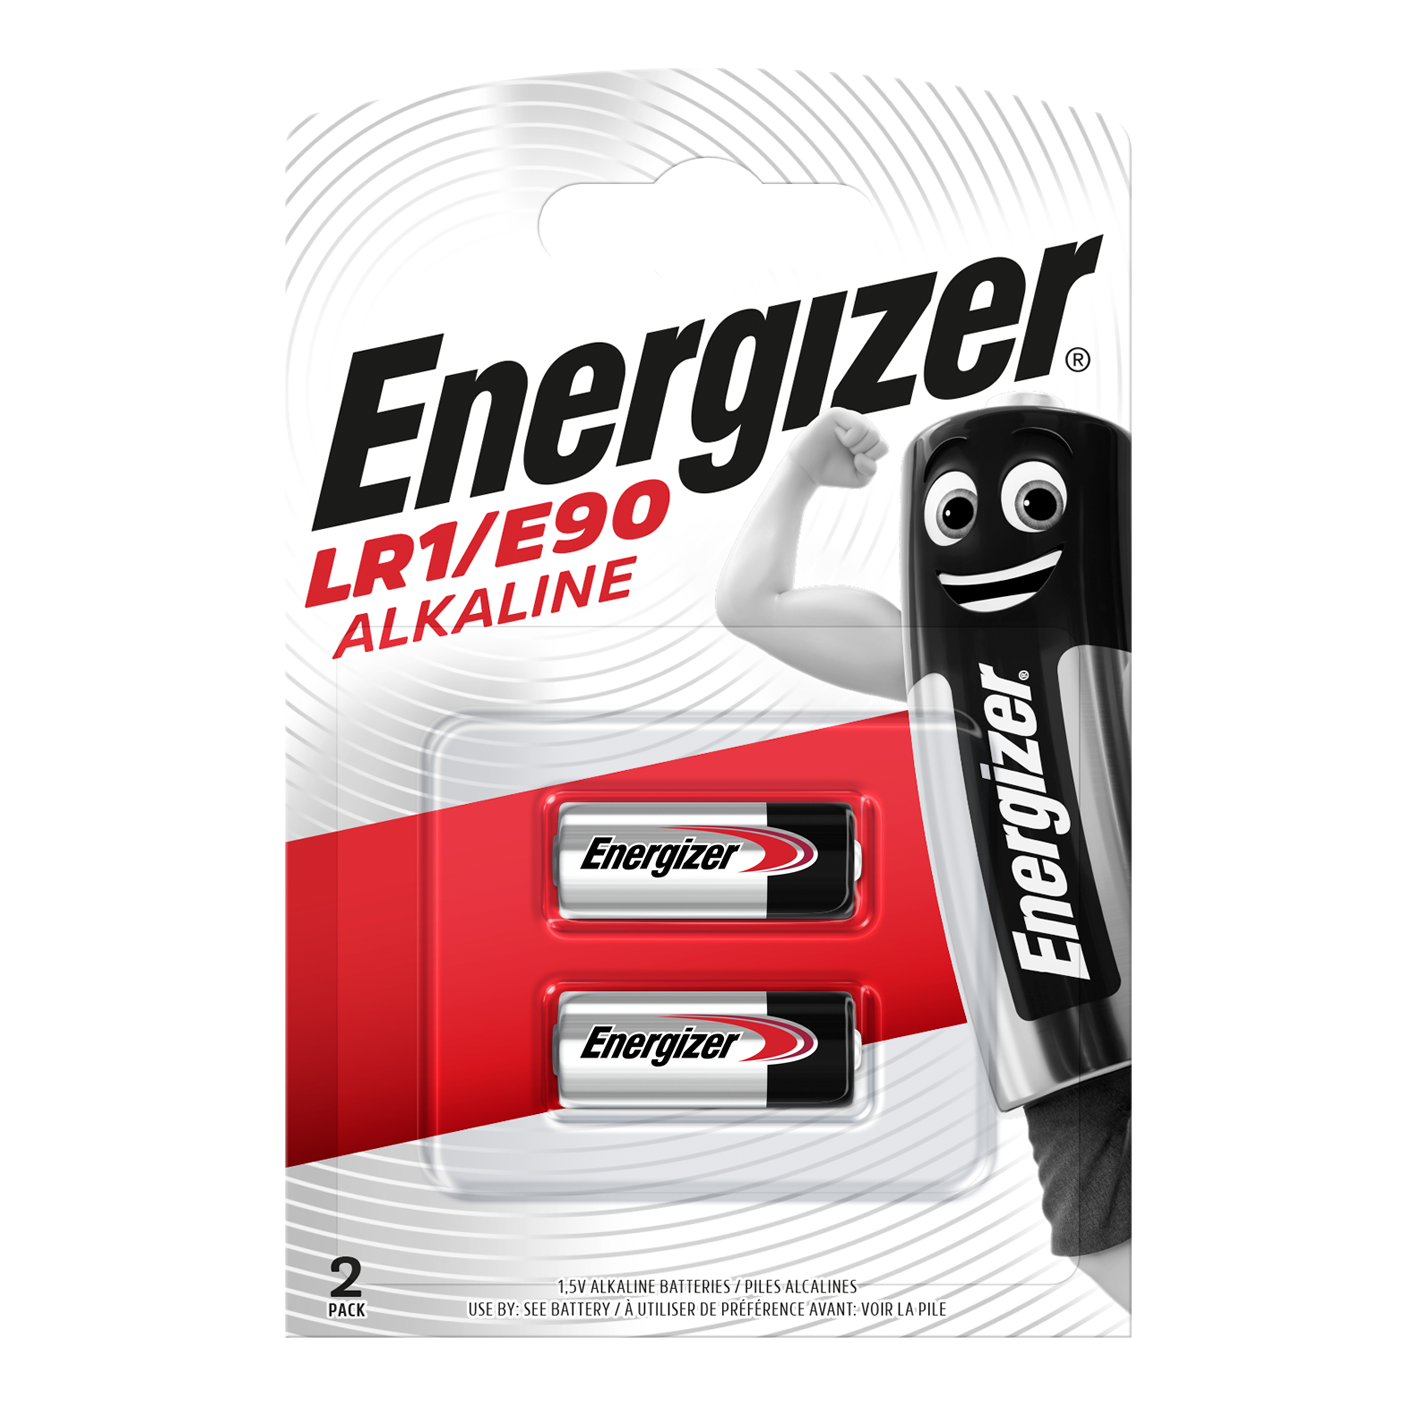 Energizer LR1/E90 Alkaline, Pack of 2